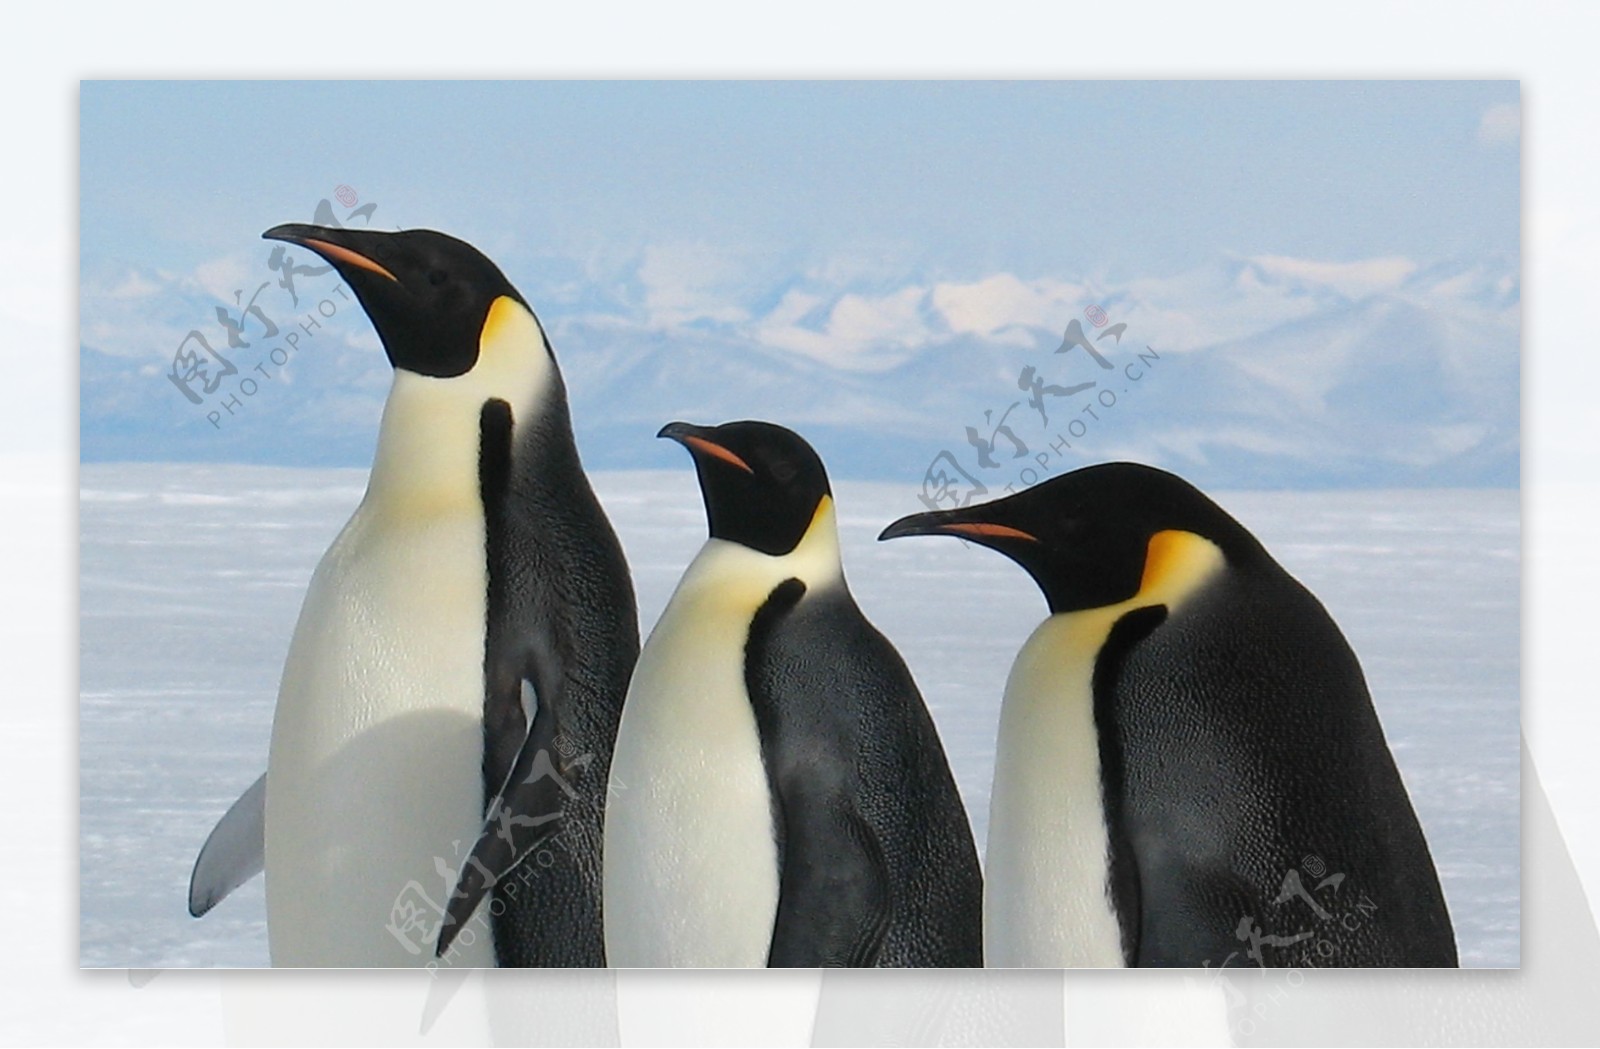 雪地上的三只企鹅图片